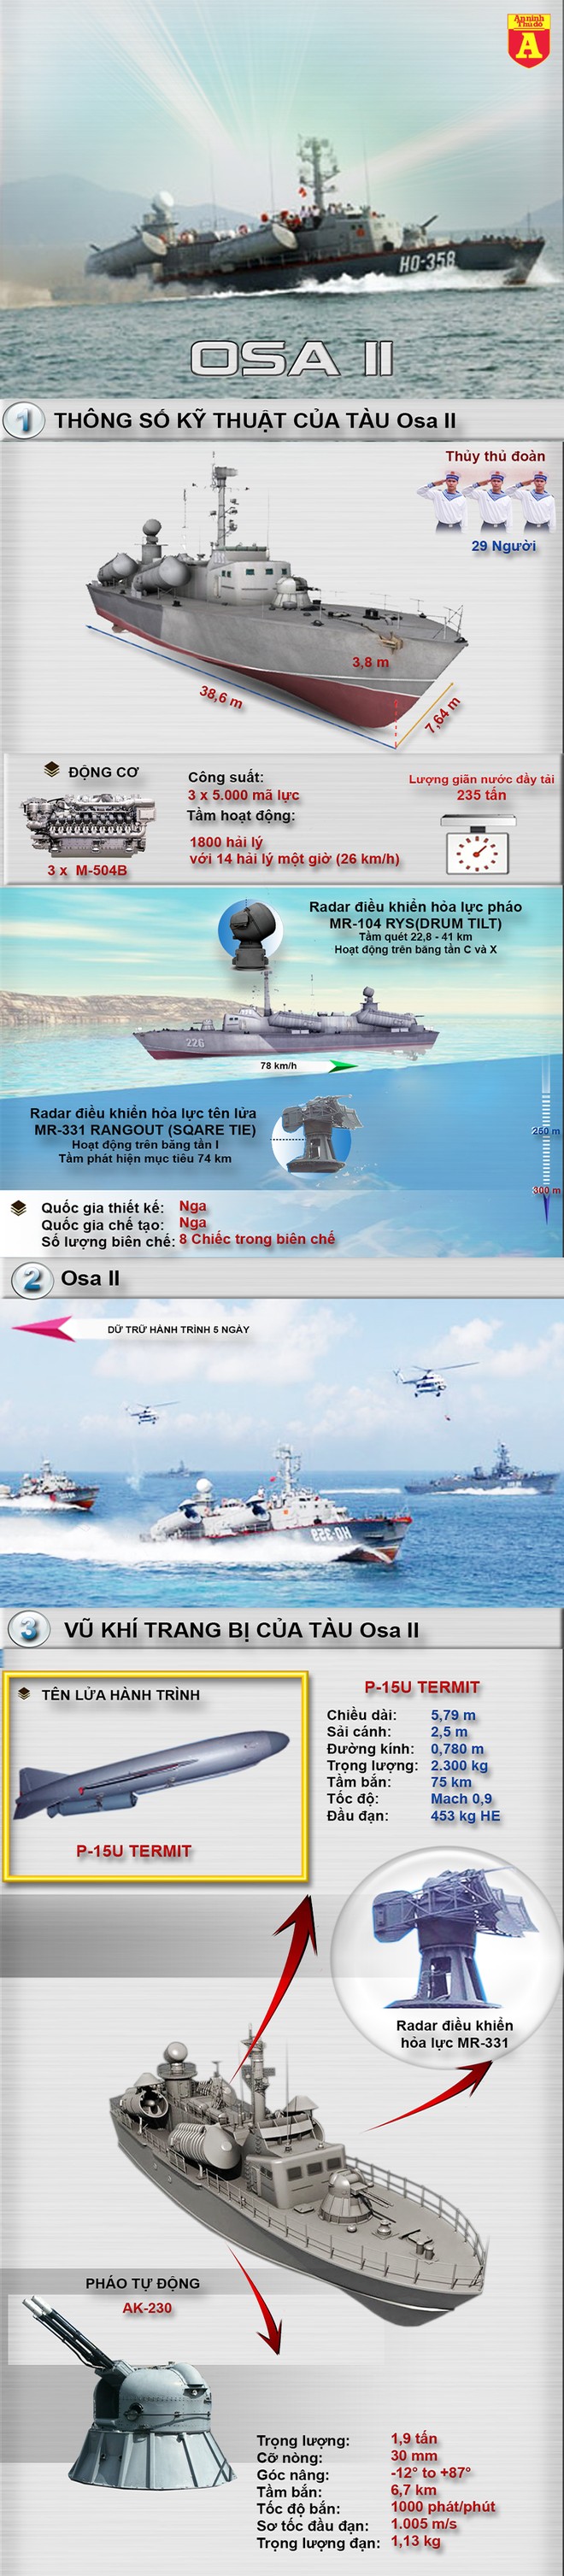 [Infographic] Osa II-Tàu tên lửa cao tốc cực nguy hiểm, Việt Nam sở hữu ảnh 2